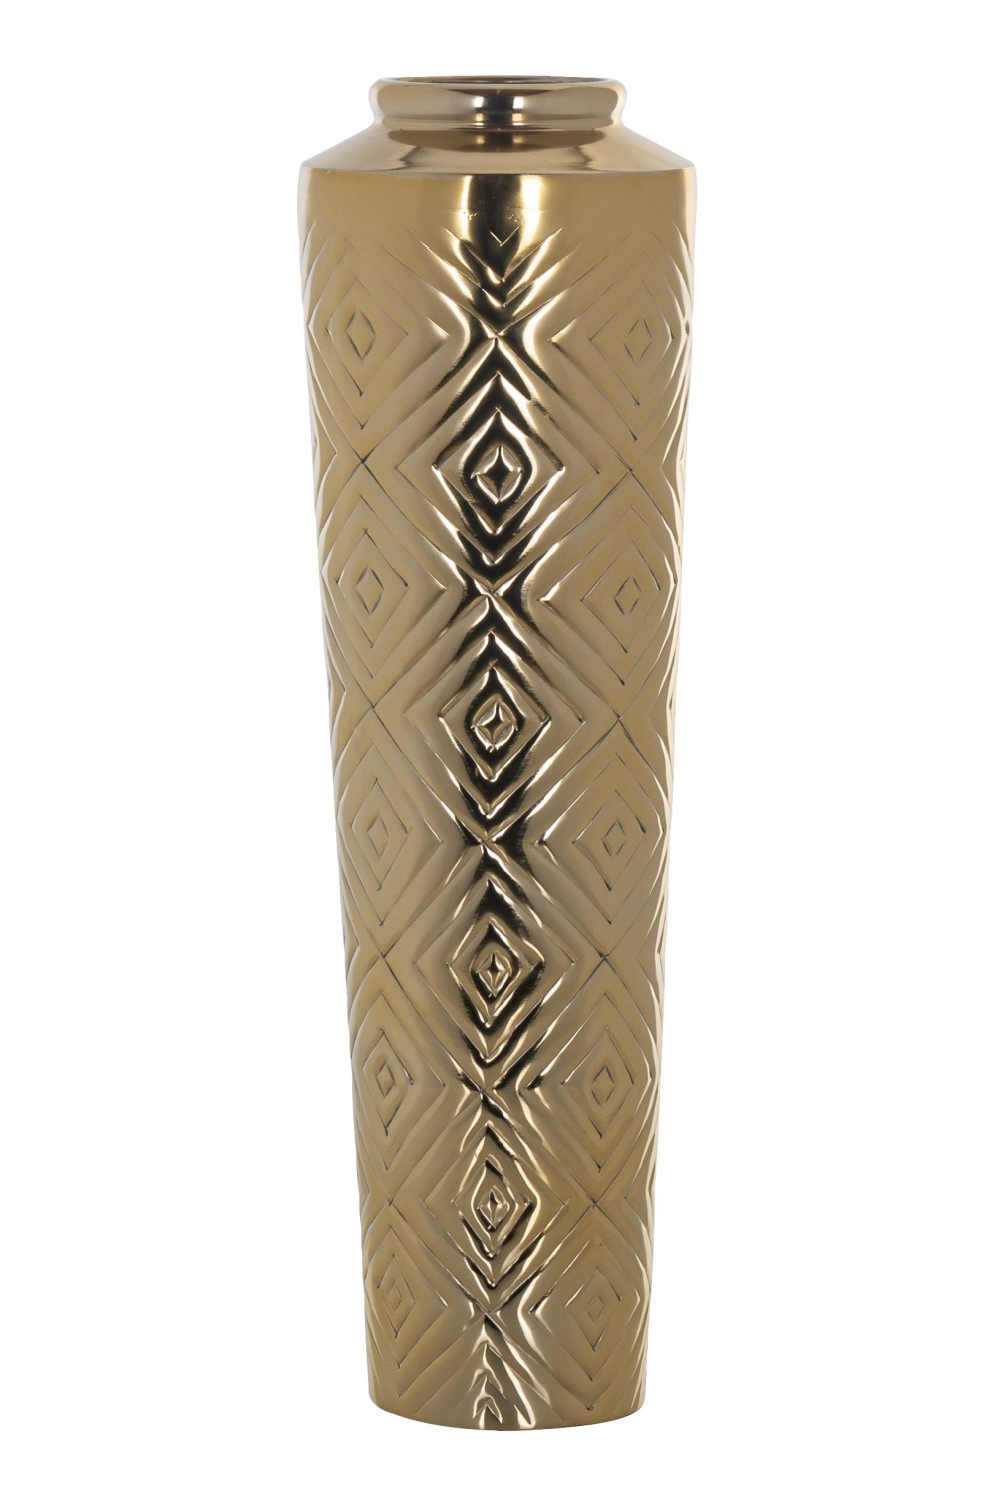 Gold Carved Vase | OROA Dana | Oroa.com